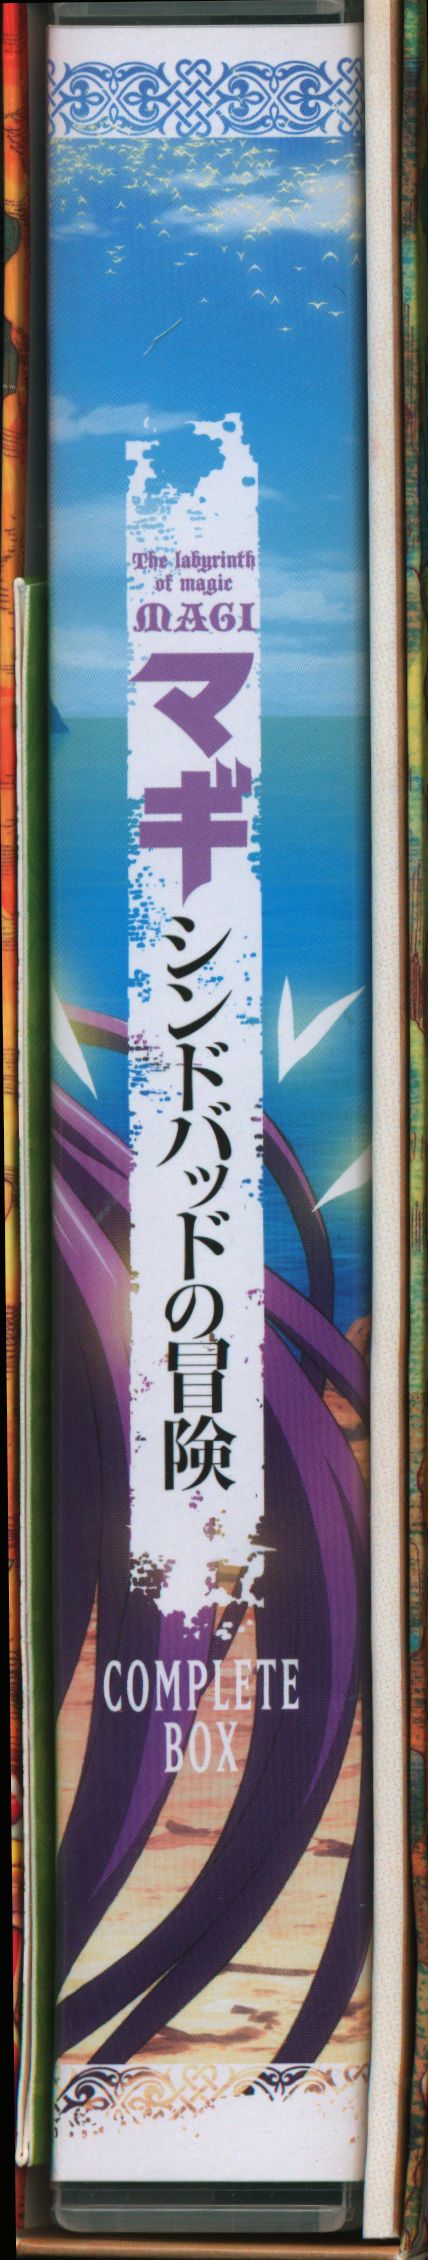 アニメDVD マギ シンドバッドの冒険 COMPLETE BOX [完全生産限定版